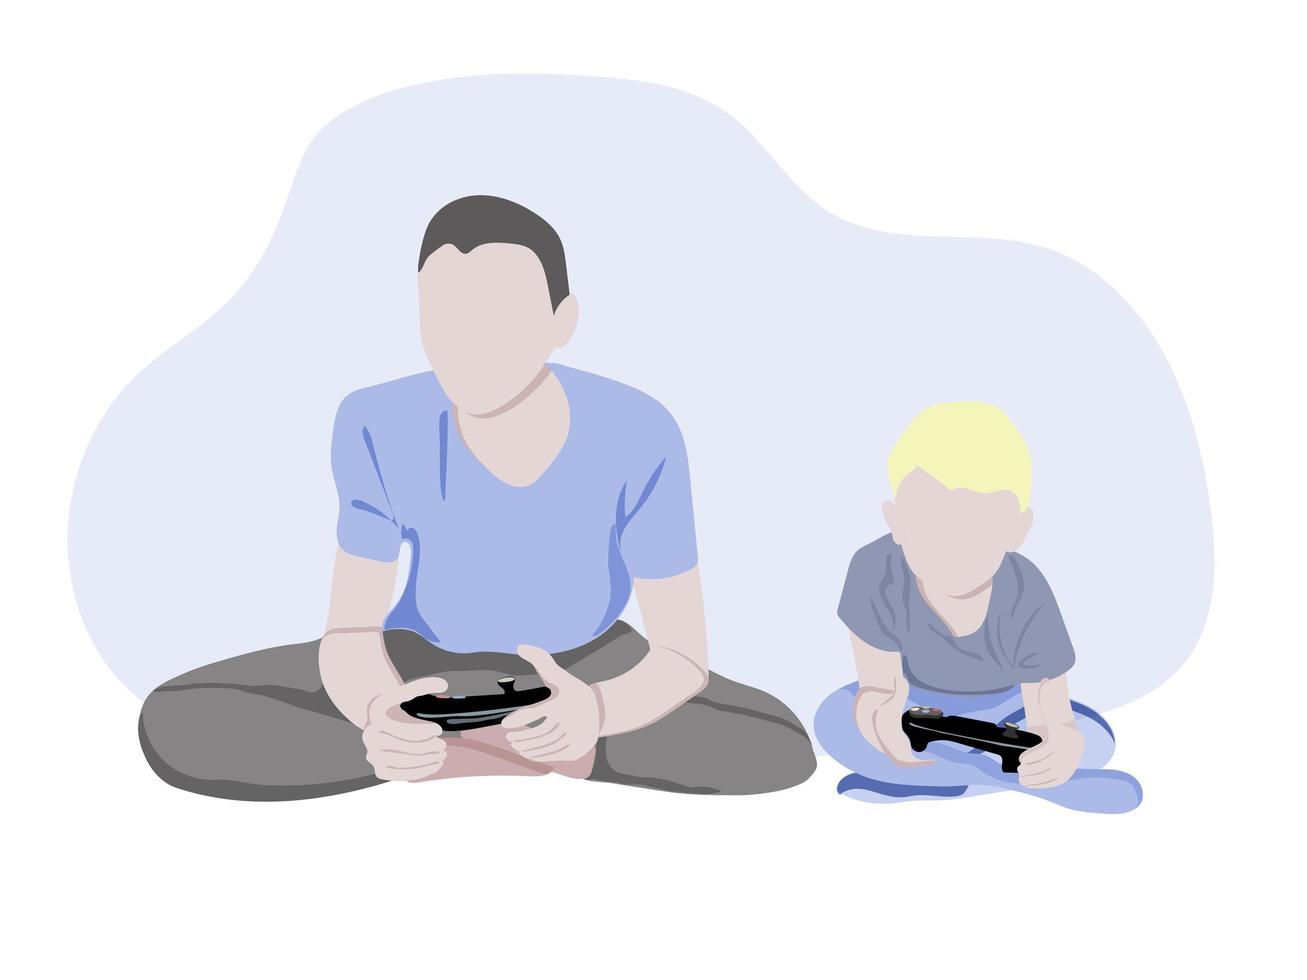 père de famille avec fils jouant à des jeux vidéo - illustrations de personnages de dessins animés isolés sur fond blanc. un jeune père et son enfant sont assis, s'amusent et jouent ensemble. vecteur